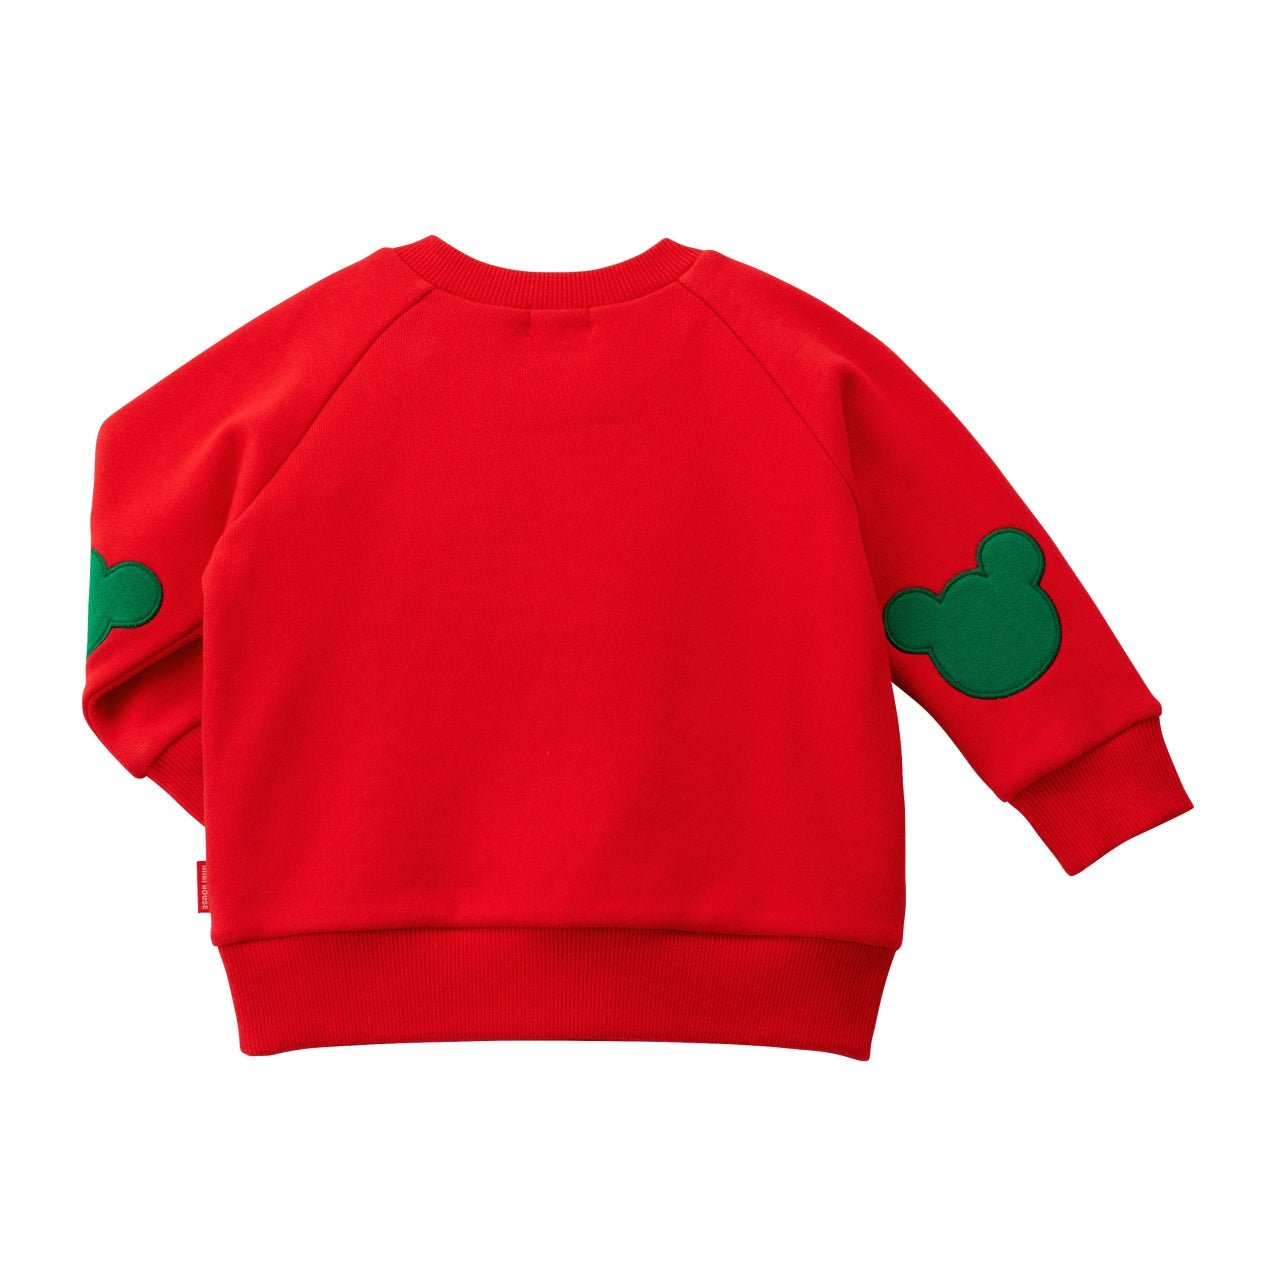 Pucci-licious Sweatshirt - 10-5610-579-02-80